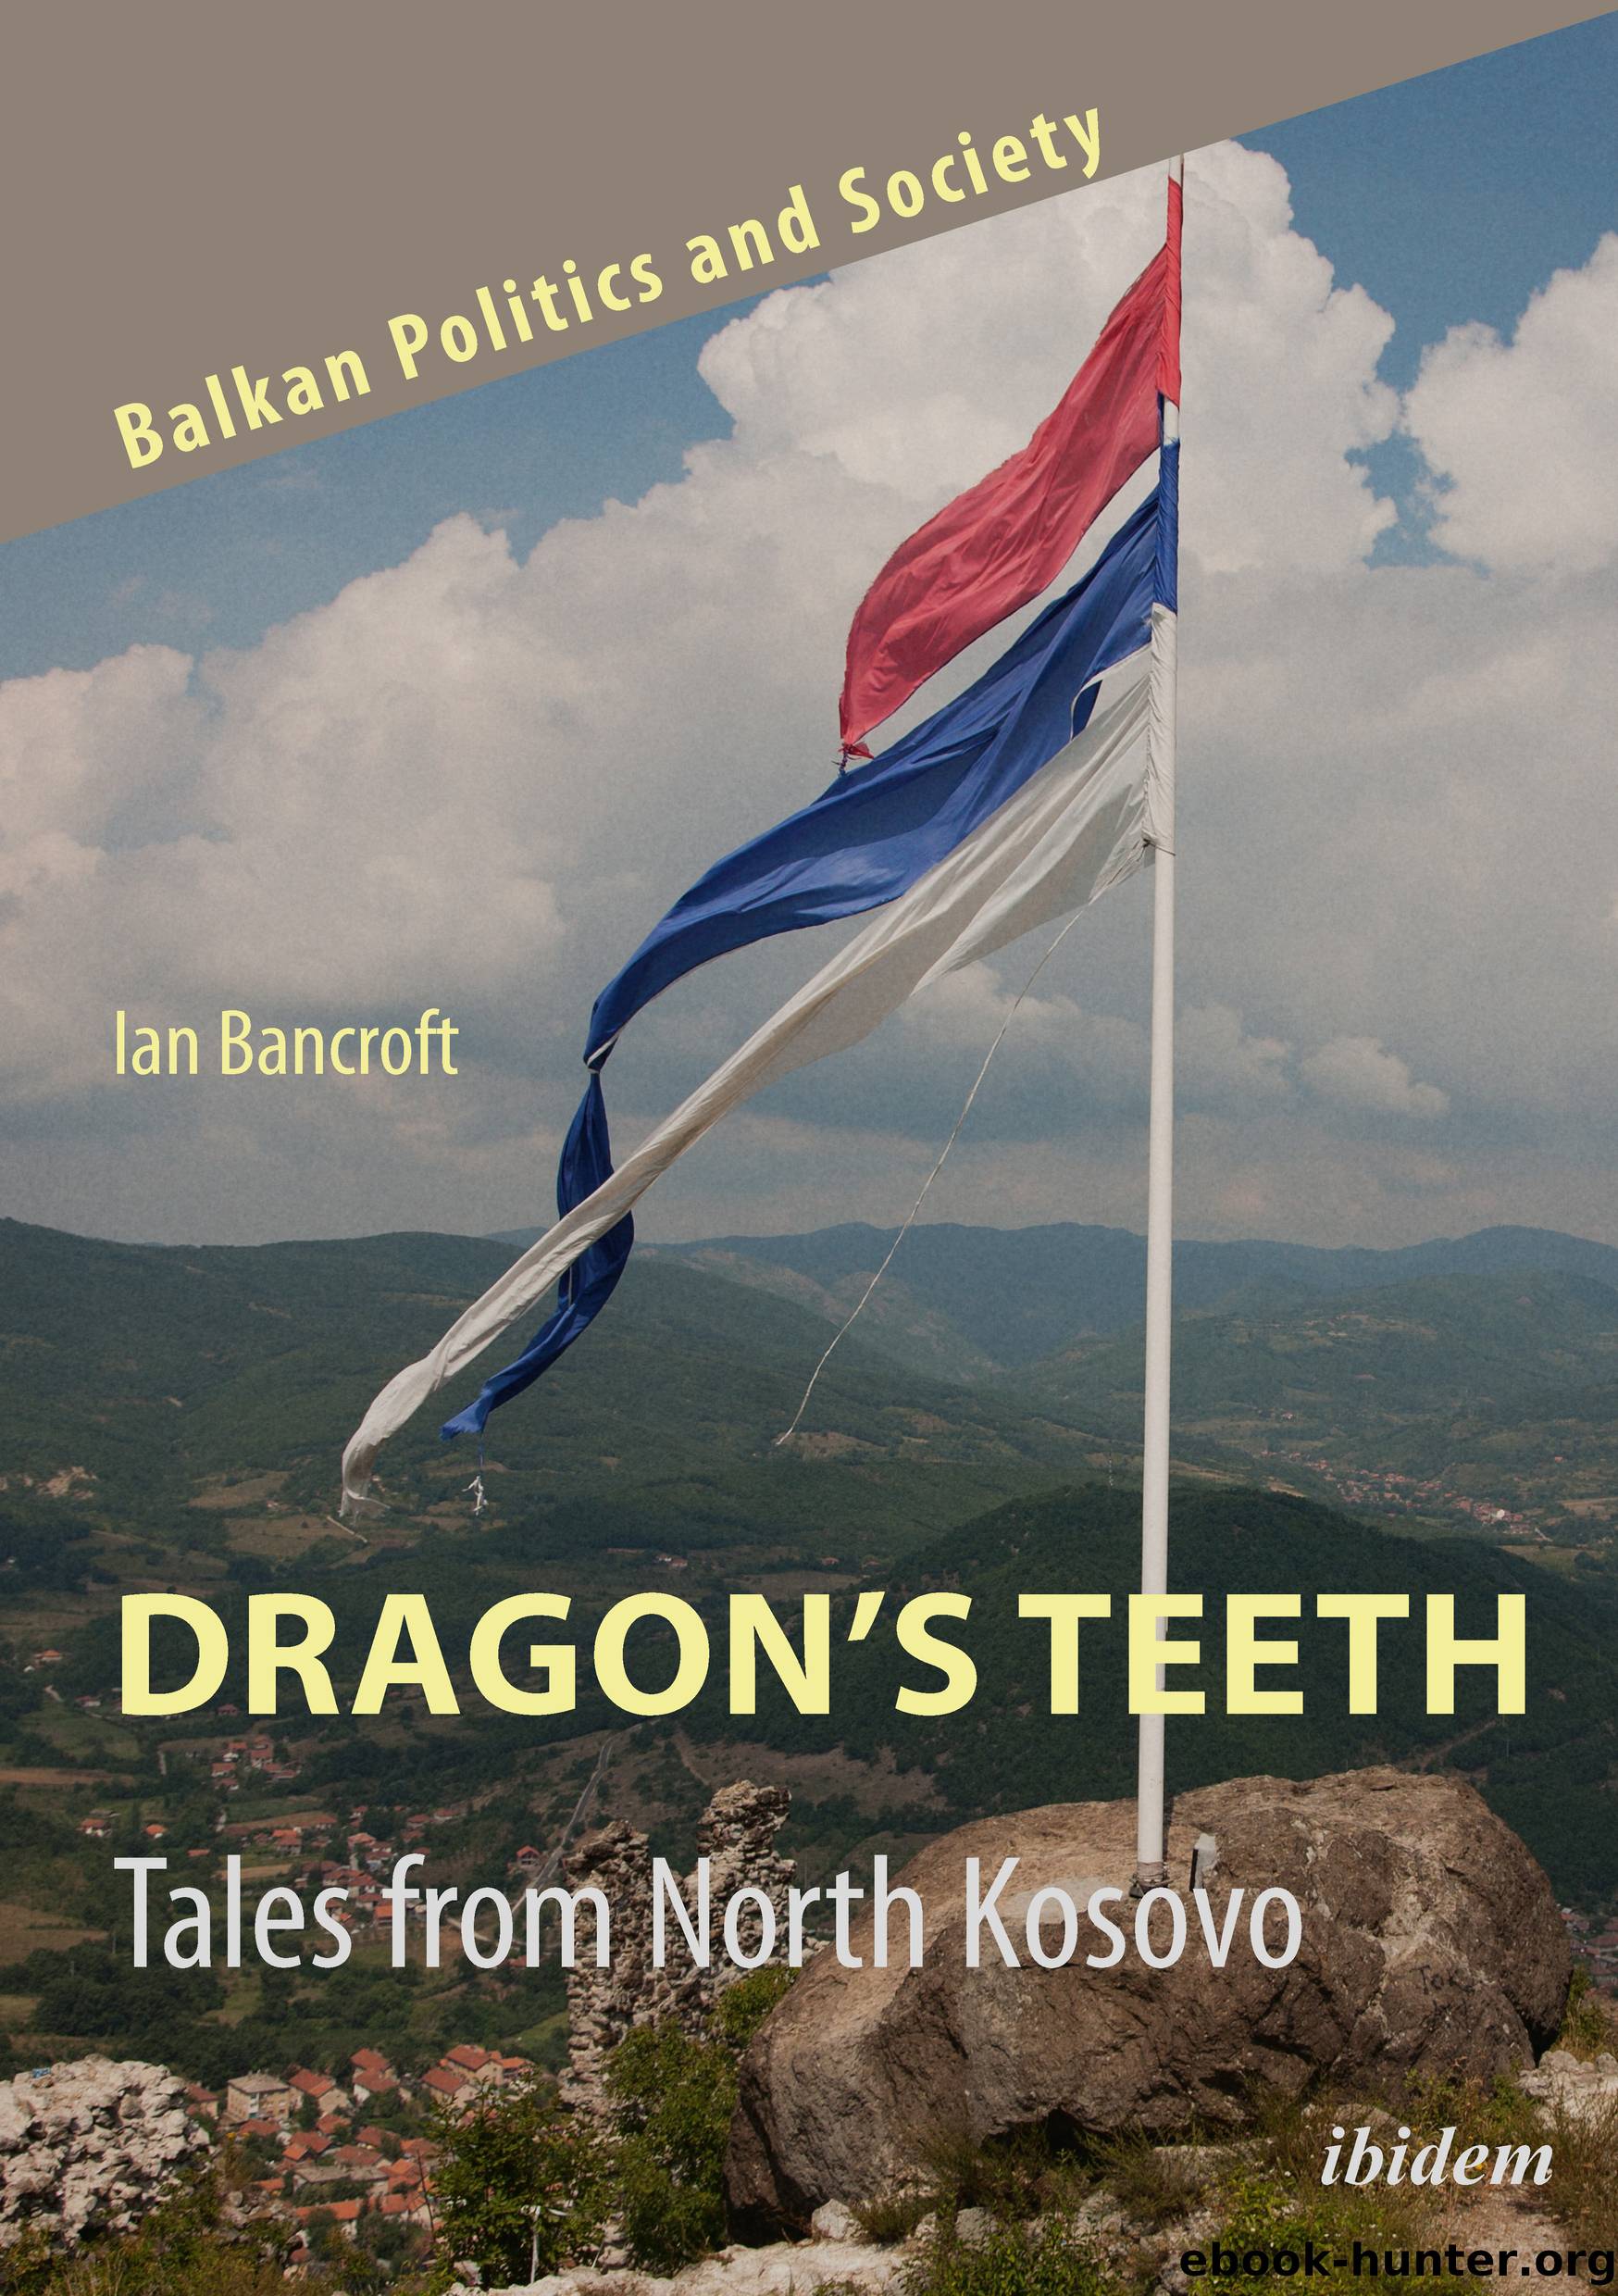 Dragon's Teeth by Ian Bancroft